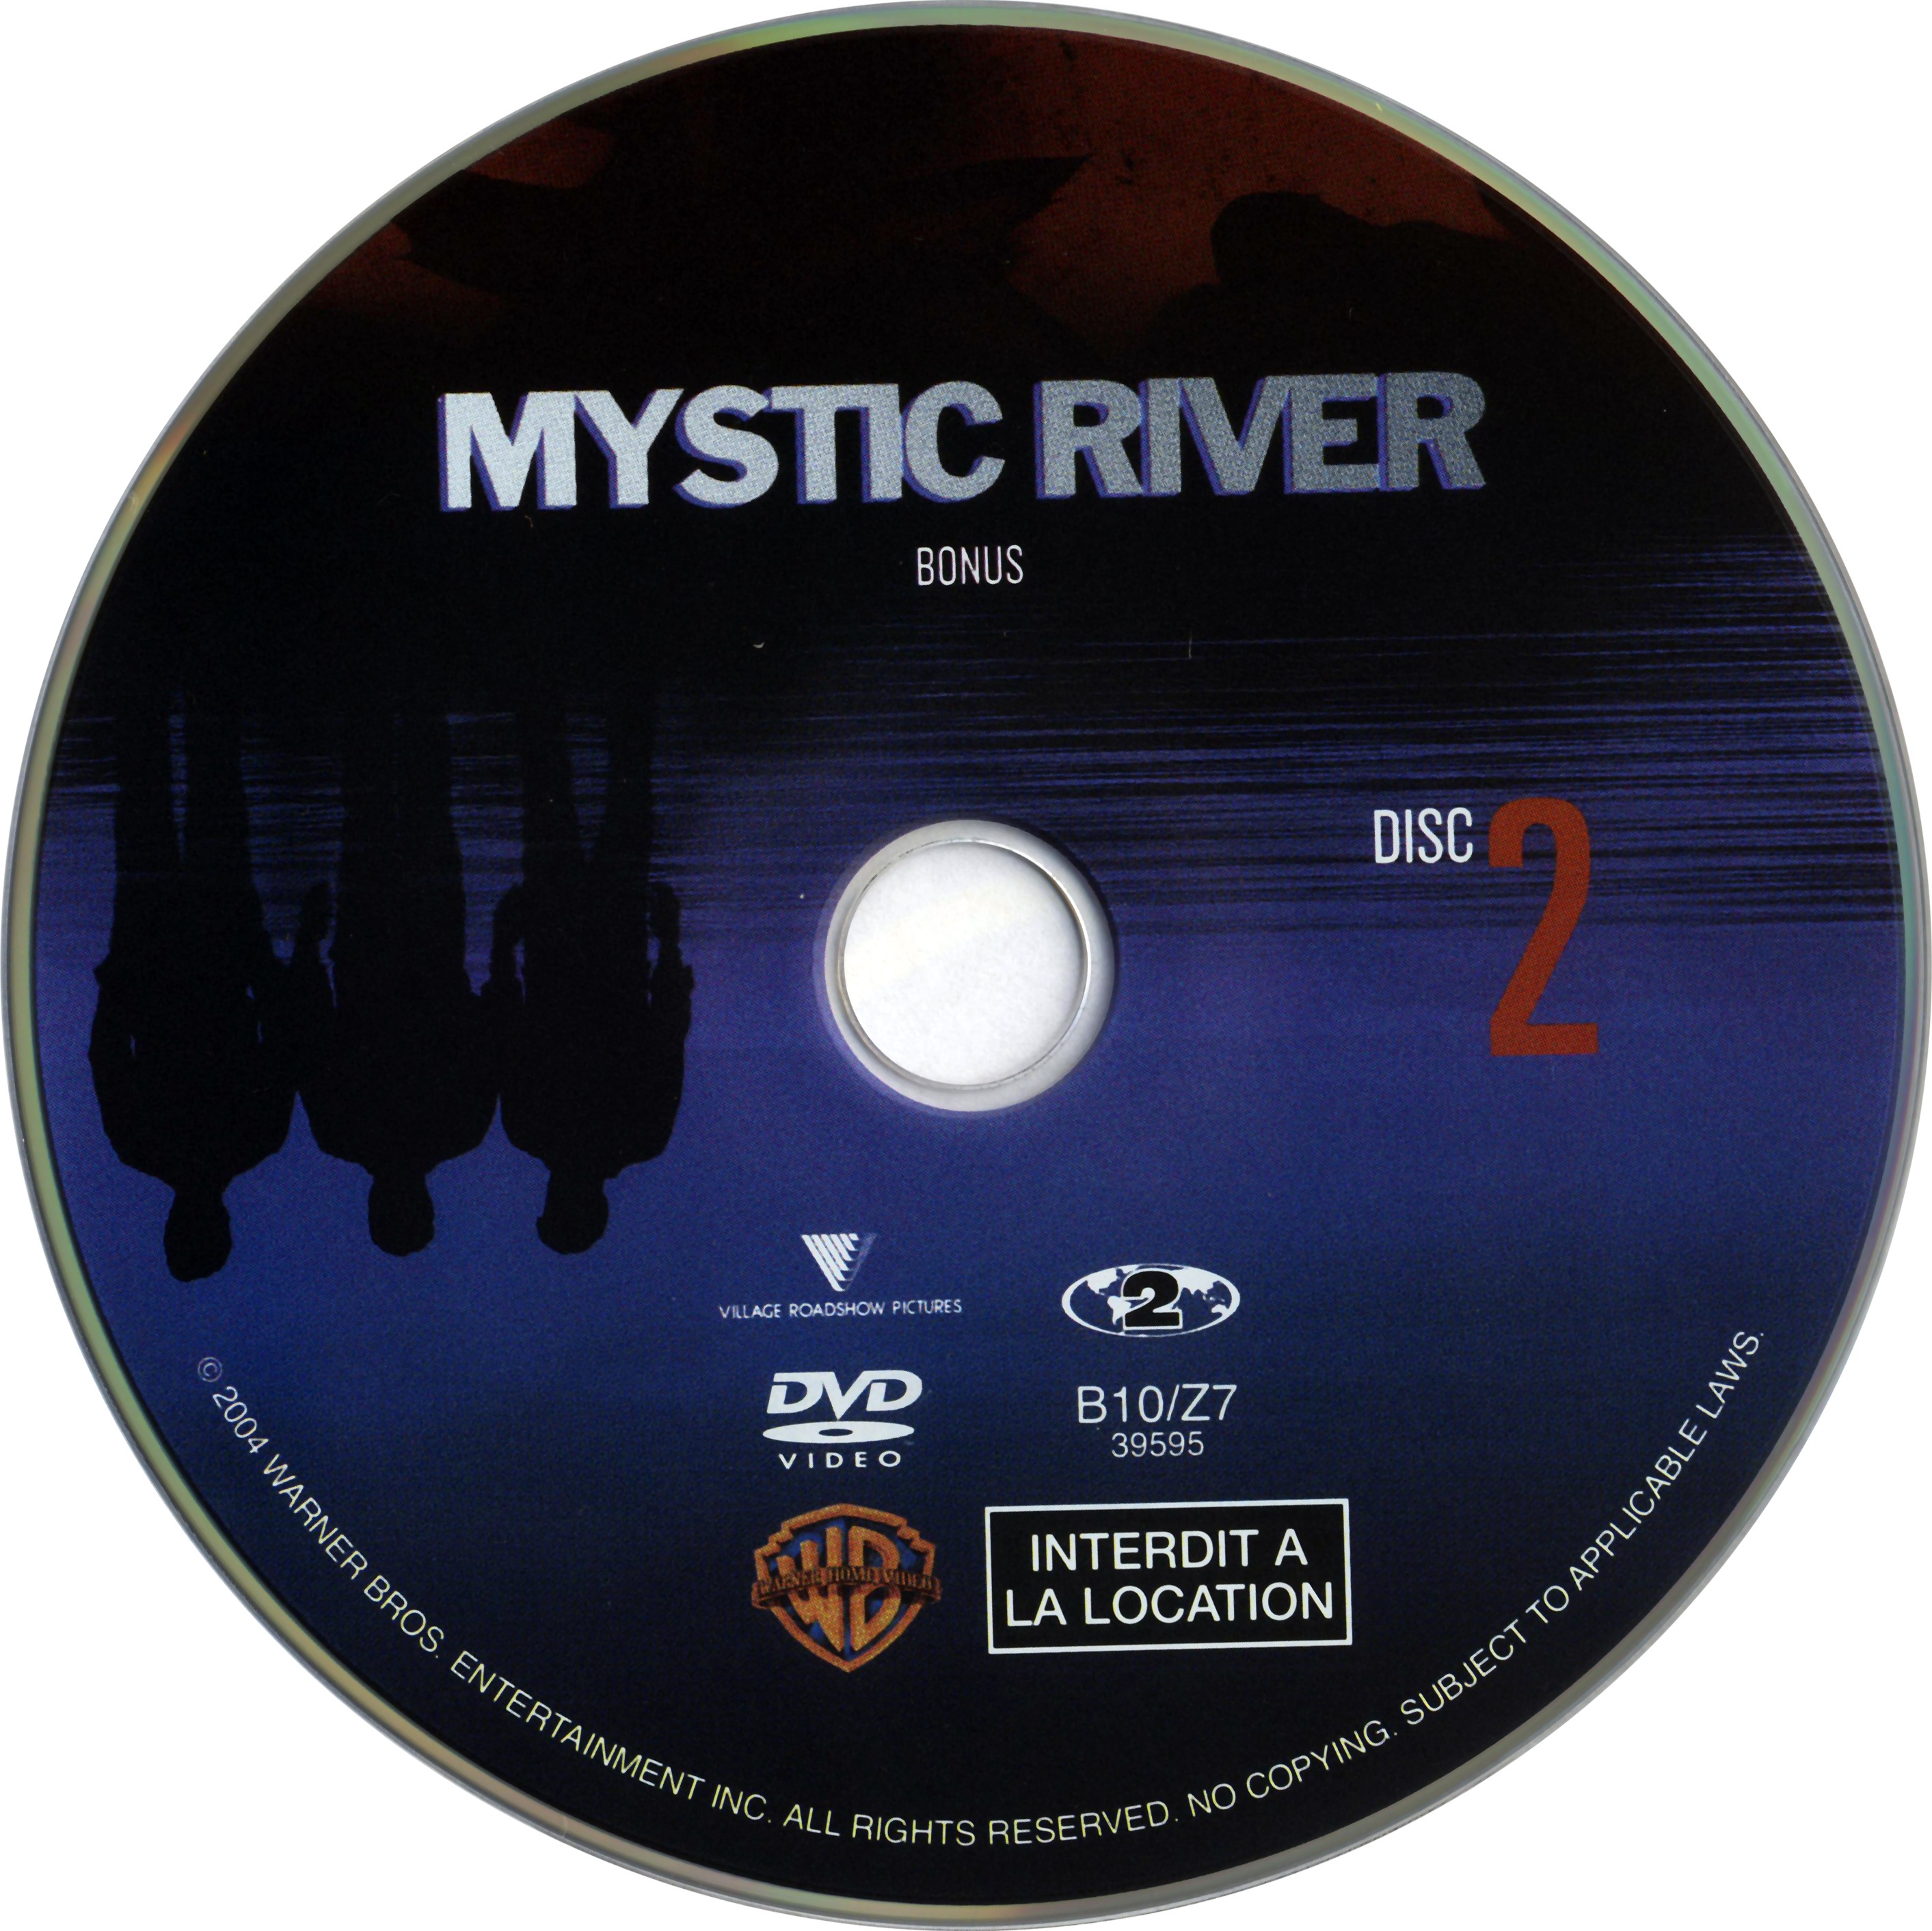 Mystic river DISC 2